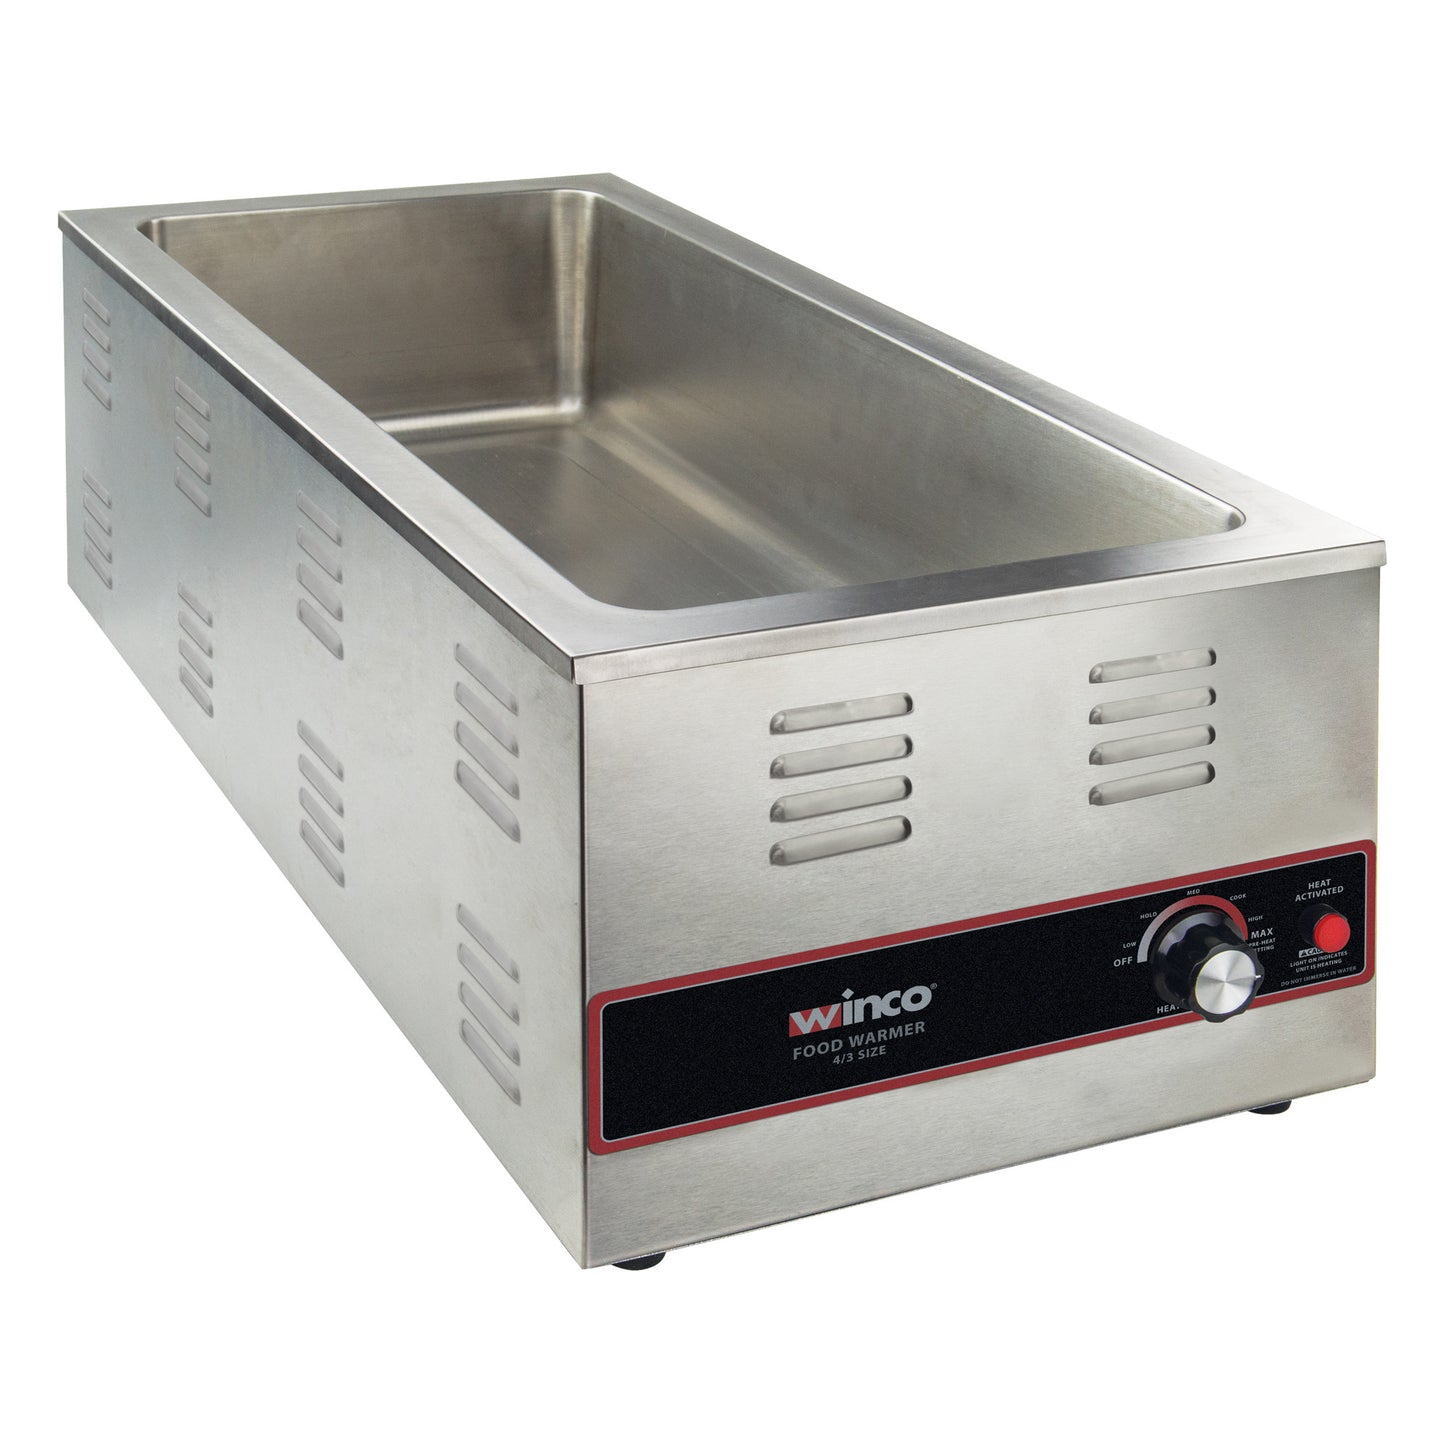 FW-L600 - 4/3 Electric Food Warmer, 1500W